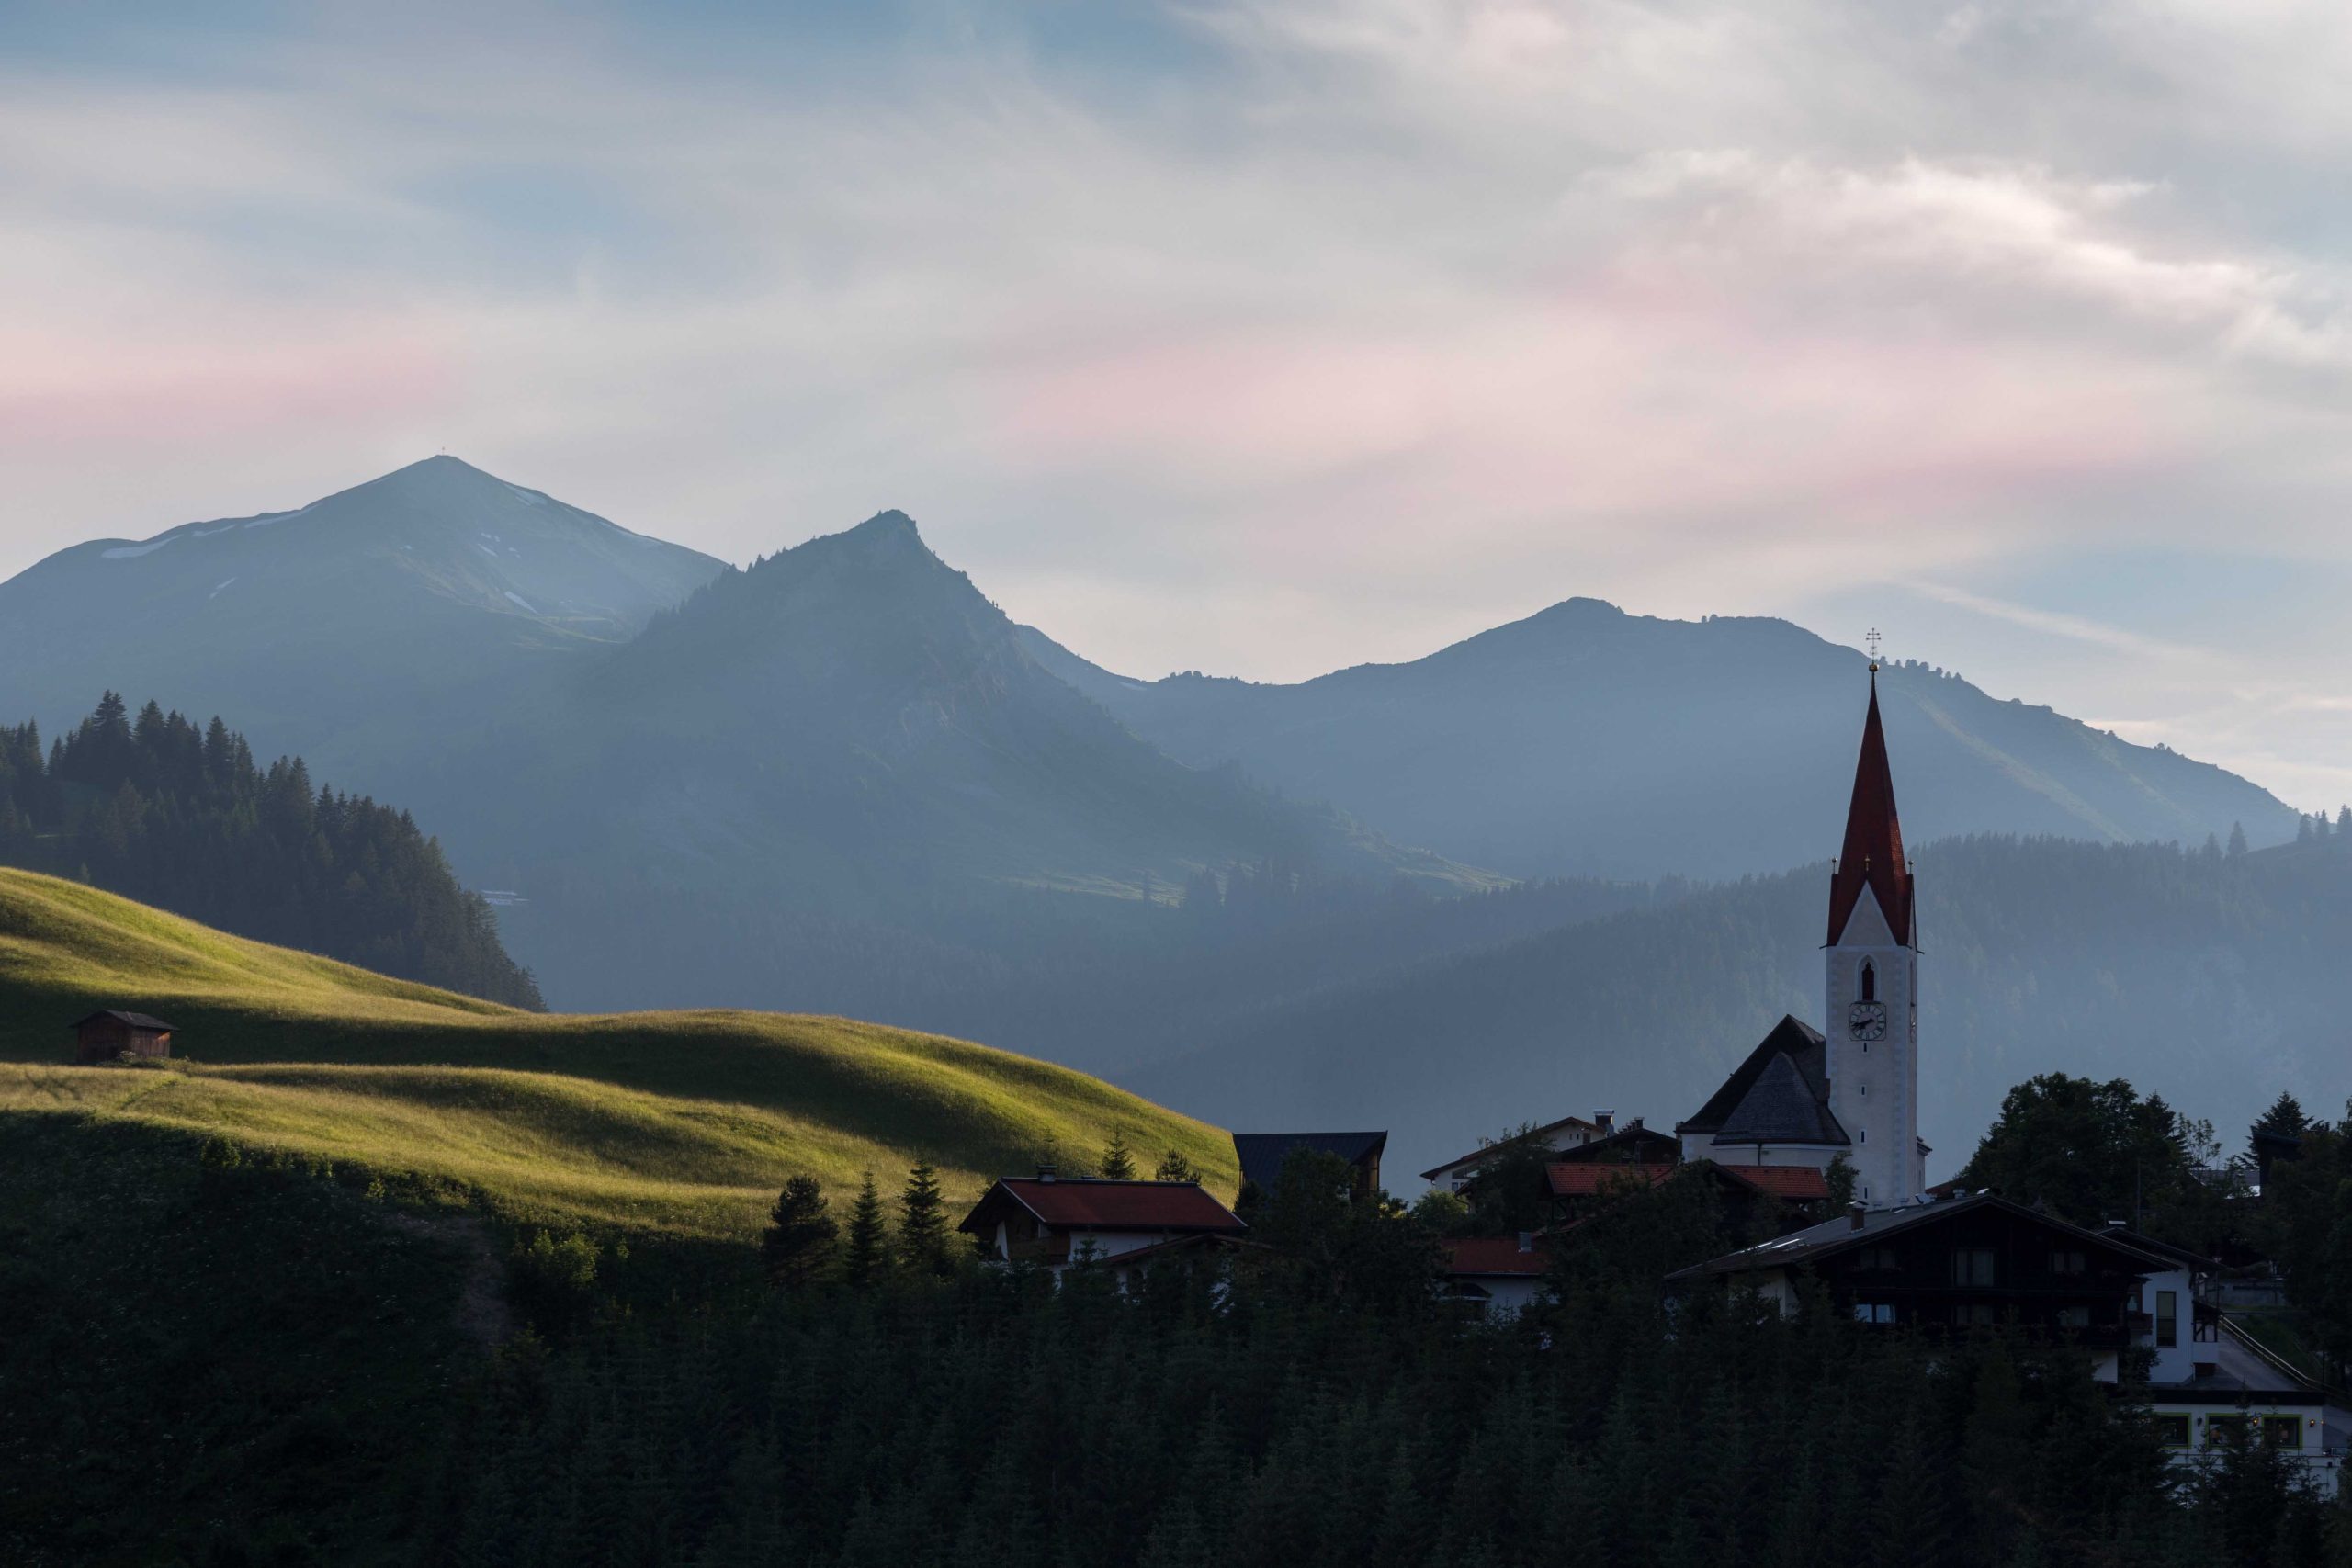 Berwang Village in Tyrol